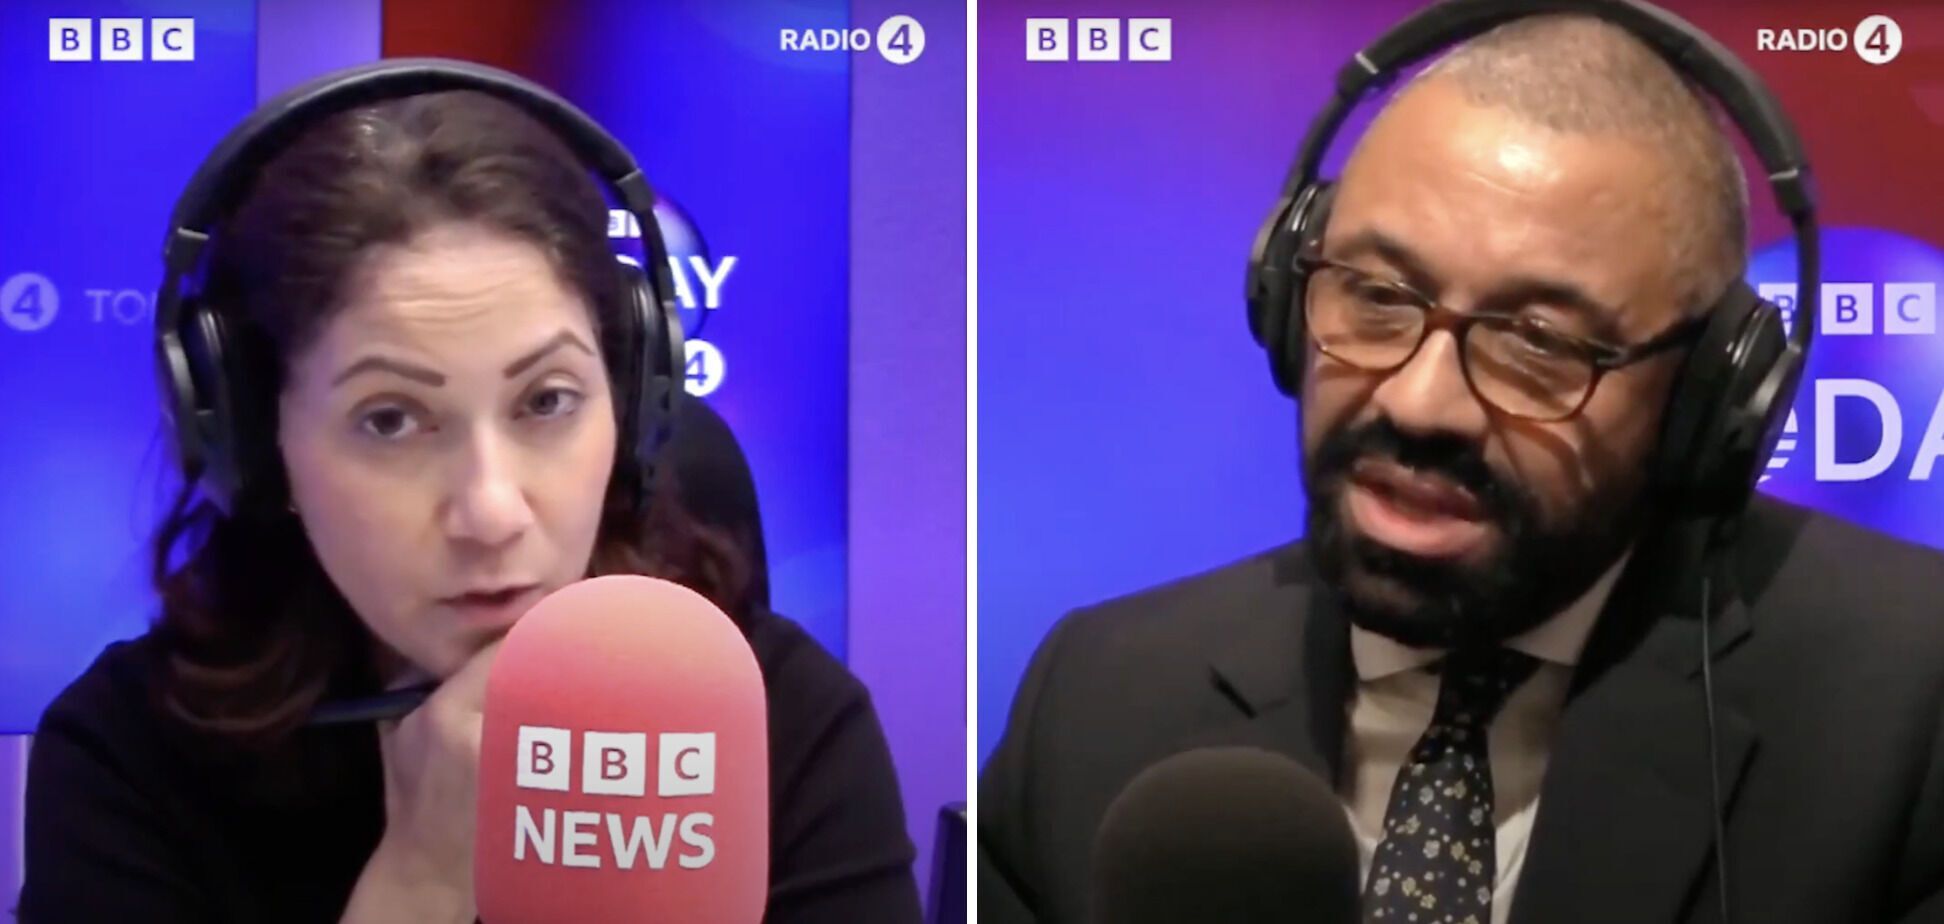 Ведуча BBC сім разів за хвилину cказала слово "лайно", сперечаючись із міністром внутрішніх справ